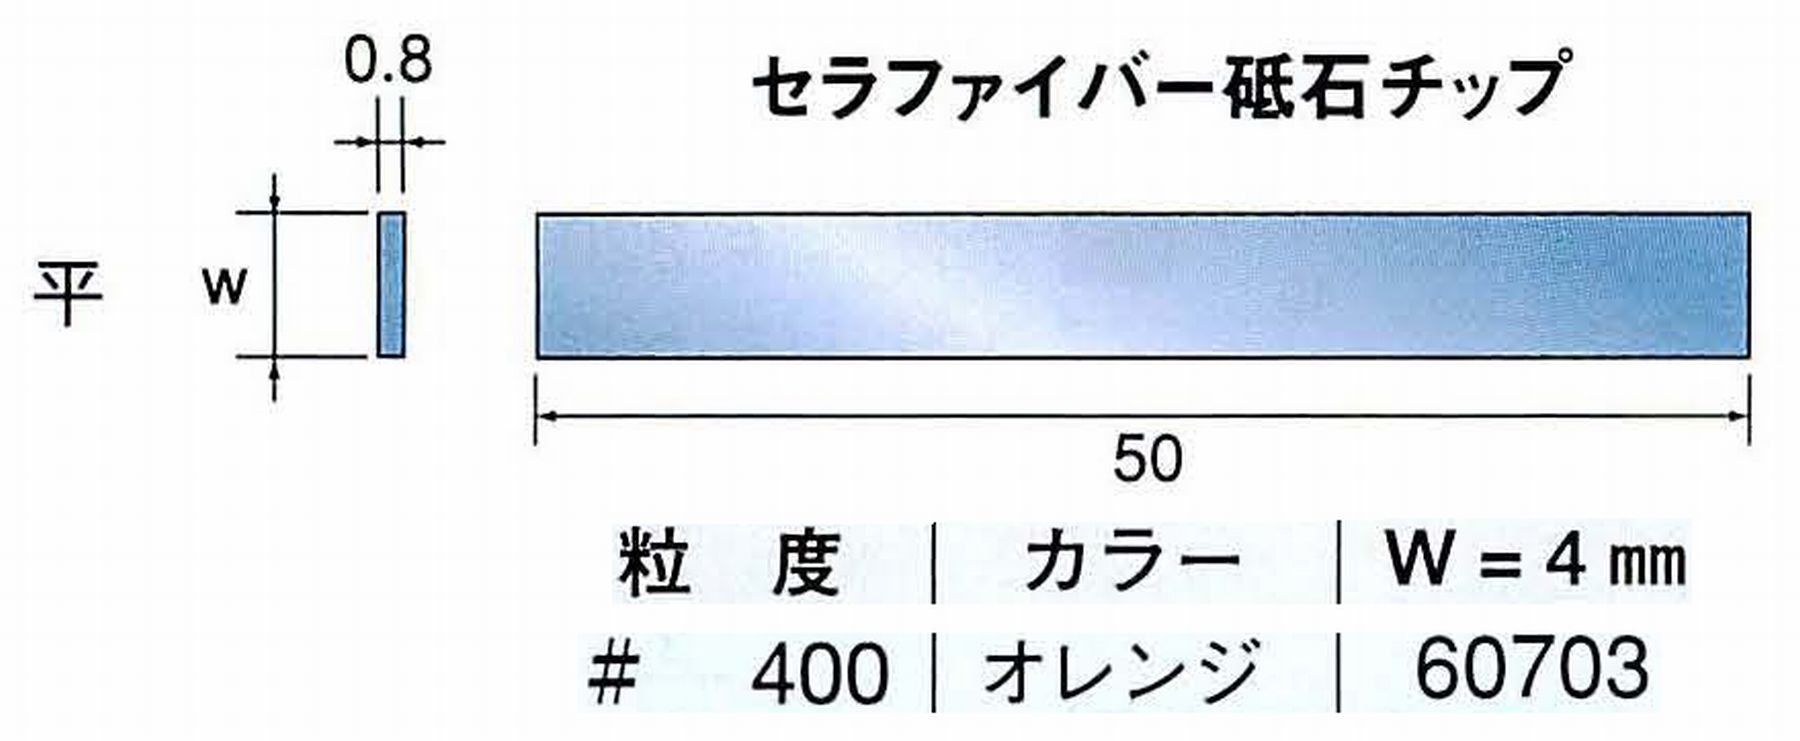 ナカニシ/NAKANISHI 超音波研磨装置 シーナスneo/シーナス専用工具 セラファイバー砥石チップ 平 60703